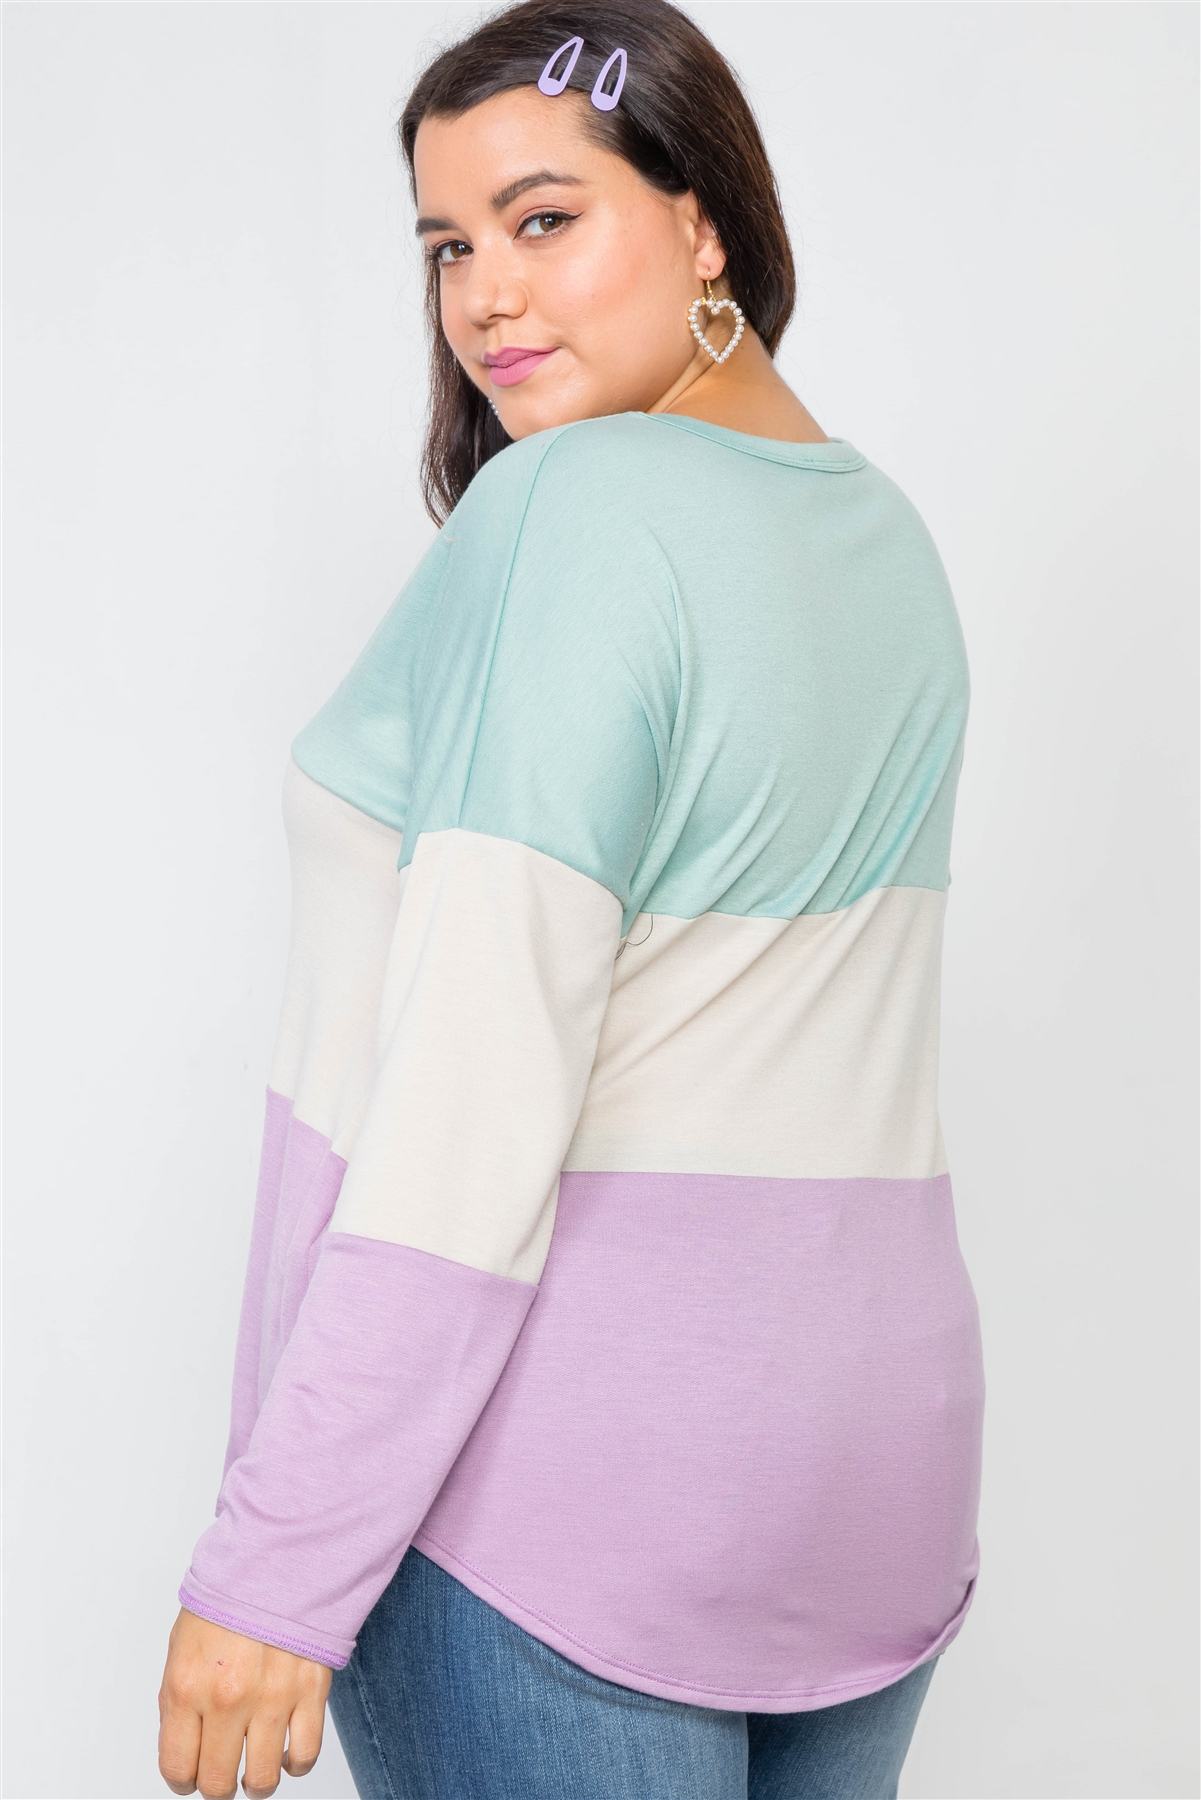 Plus Size Colorblock Soft Knit Top